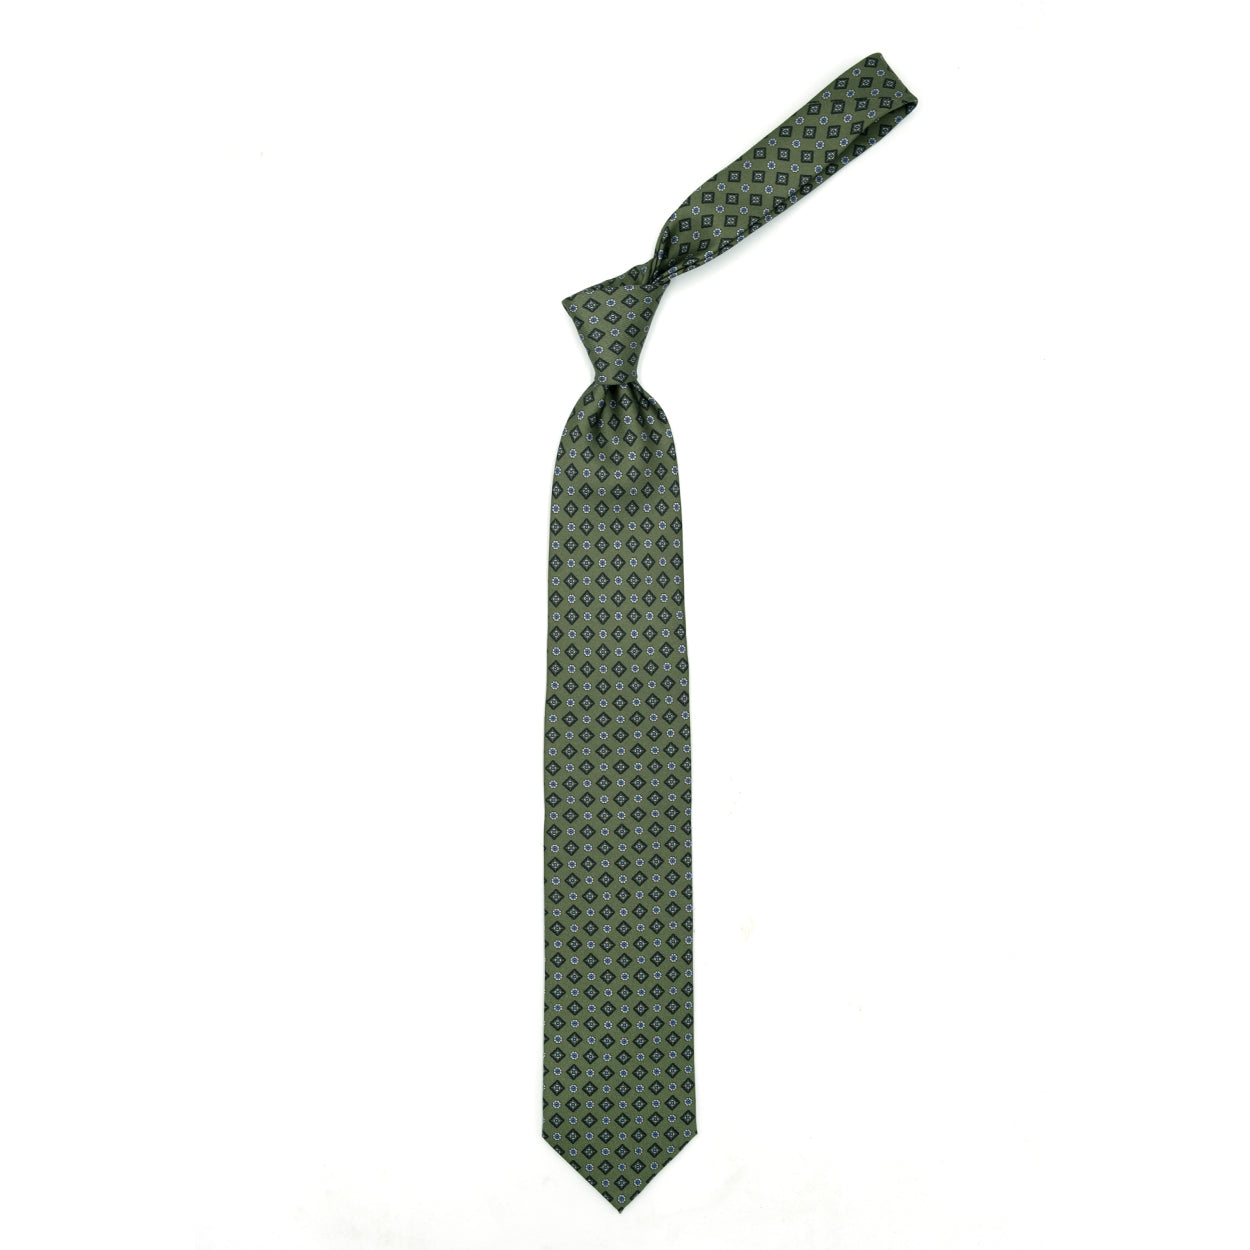 Cravatta verde con fiorellini bianchi e azzurri